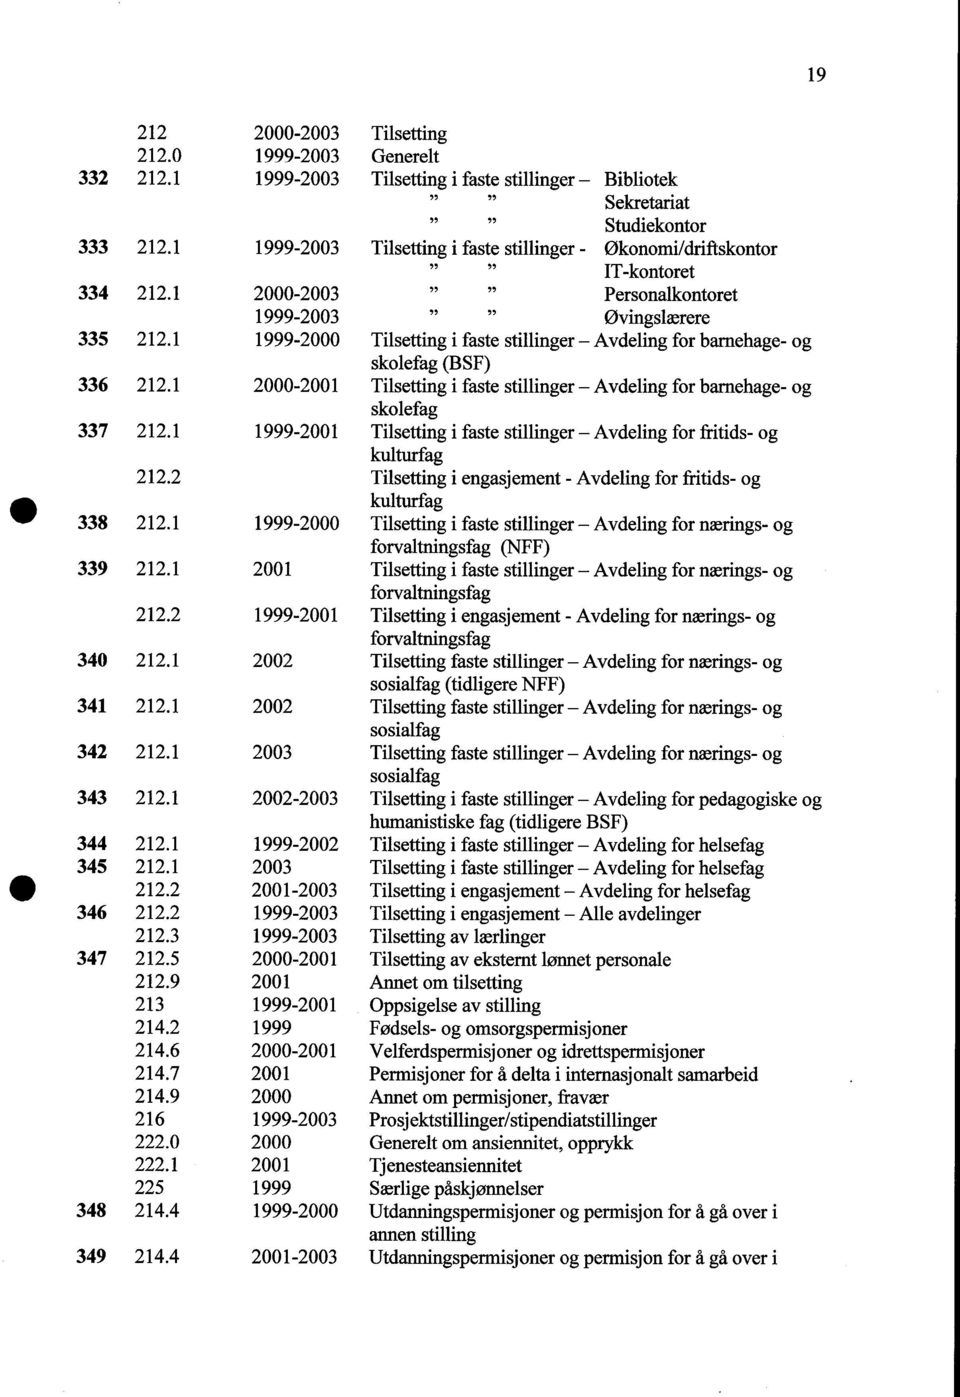 1 19-2000 Tilsetting i faste stillinger - Avdeling for barnehage- og skolefag (BSF) 336 212.1 2000-2001 Tilsetting i faste stillinger - Avdeling for barnehage- og skolefag 337 212.